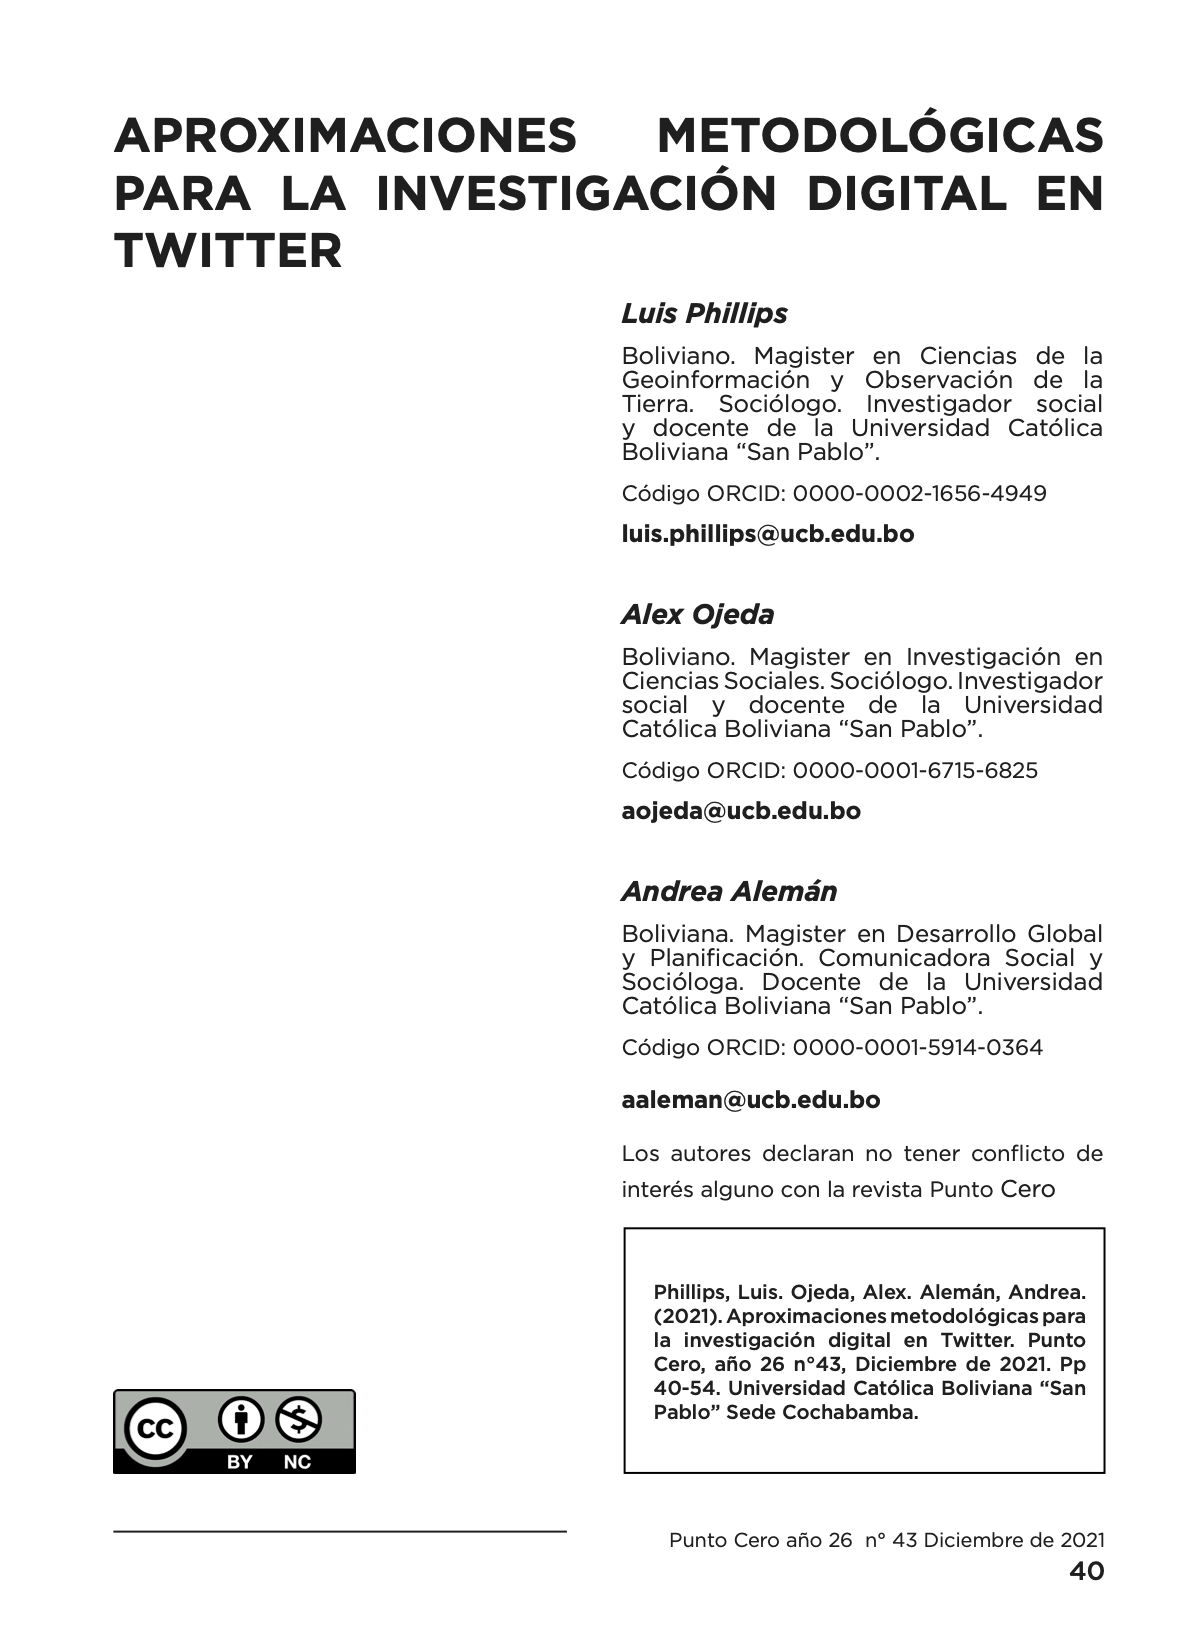 Aproximaciones metodológicas para la investigación digital en Twitter